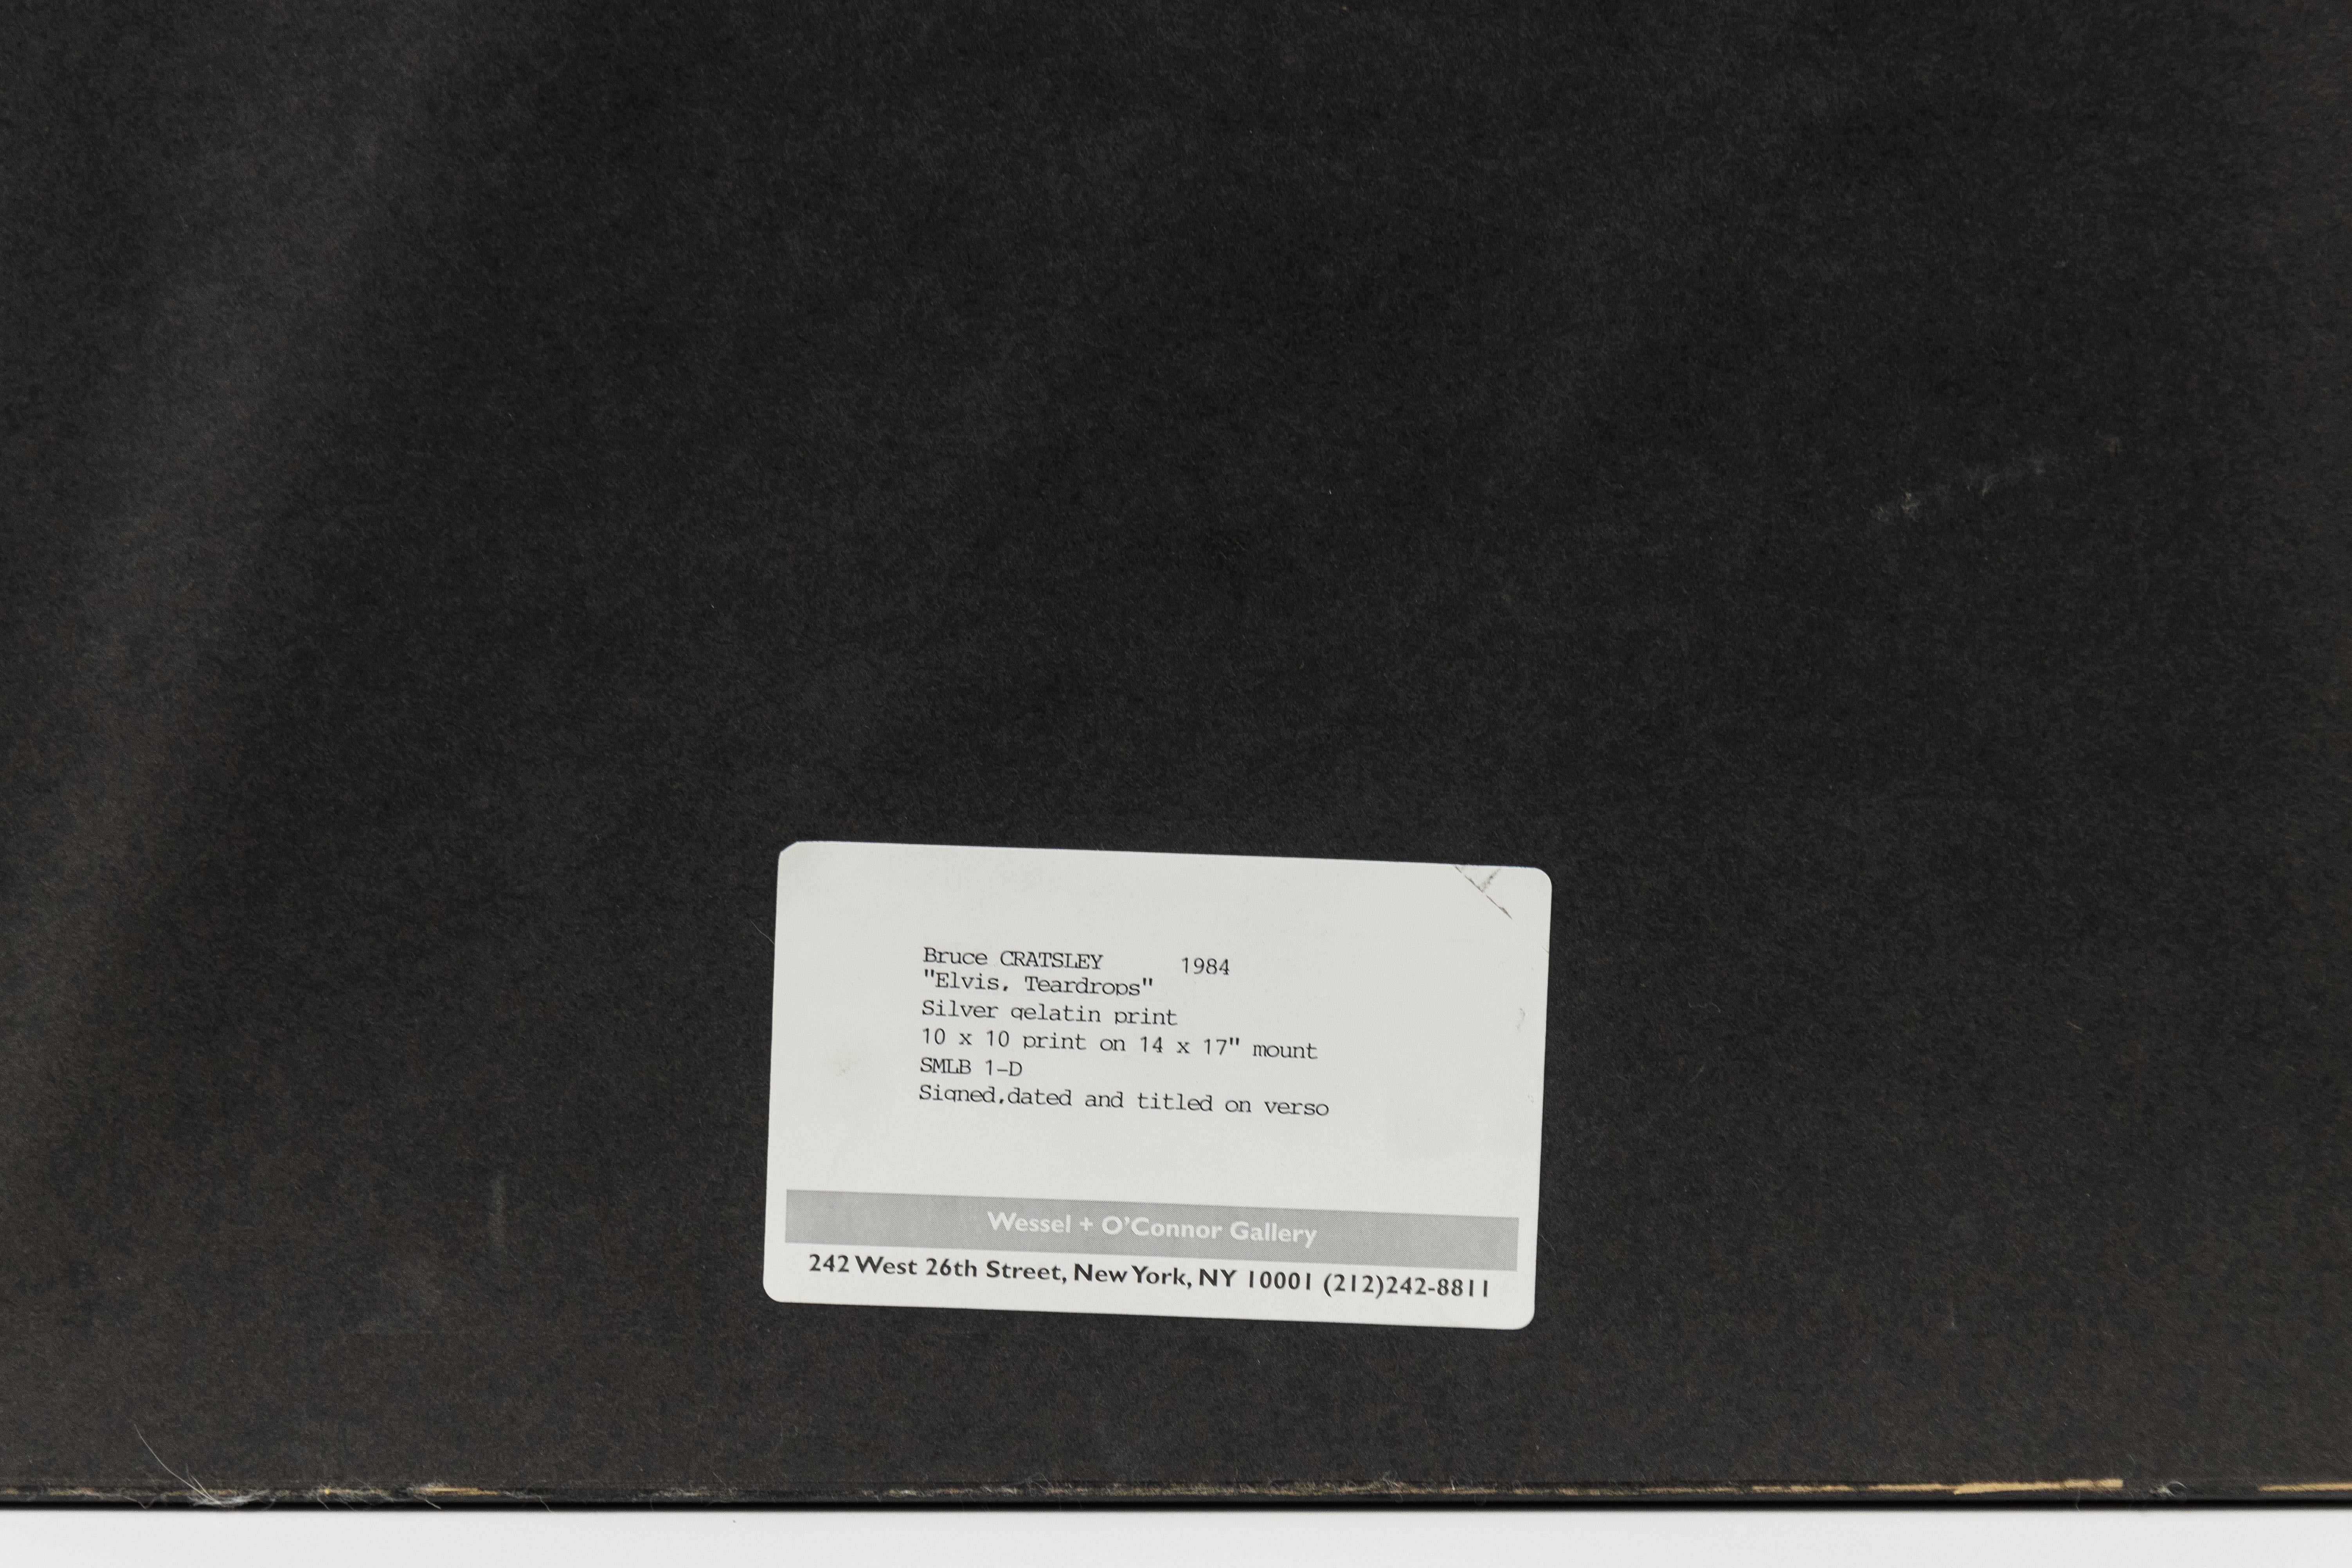 Il s'agit d'une photographie en noir et blanc d'Elvis Presley par Bruce Cratsley offerte par le CLAMP à New York.

Larmes d'Elvis
1984

Tirage gélatino-argentique

17 x 14 pouces (43,2 x 35,6 cm), feuille
10 x 10 pouces (25,4 x 25,4 cm),